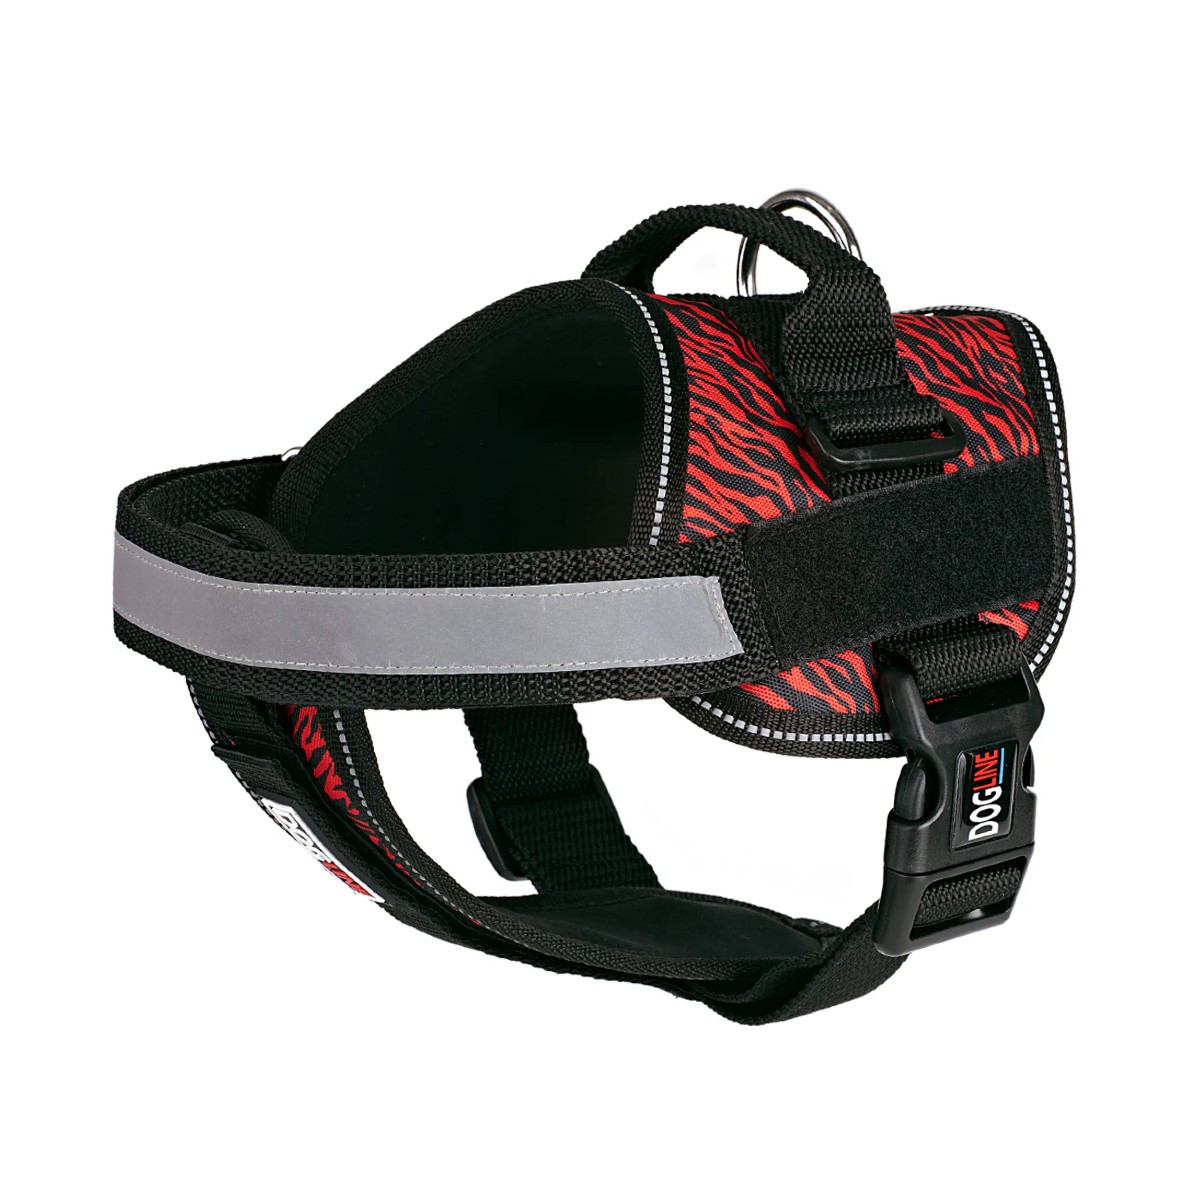 Dogline Unimax Multi Purpose Dog Harness - Zebra Black/Red